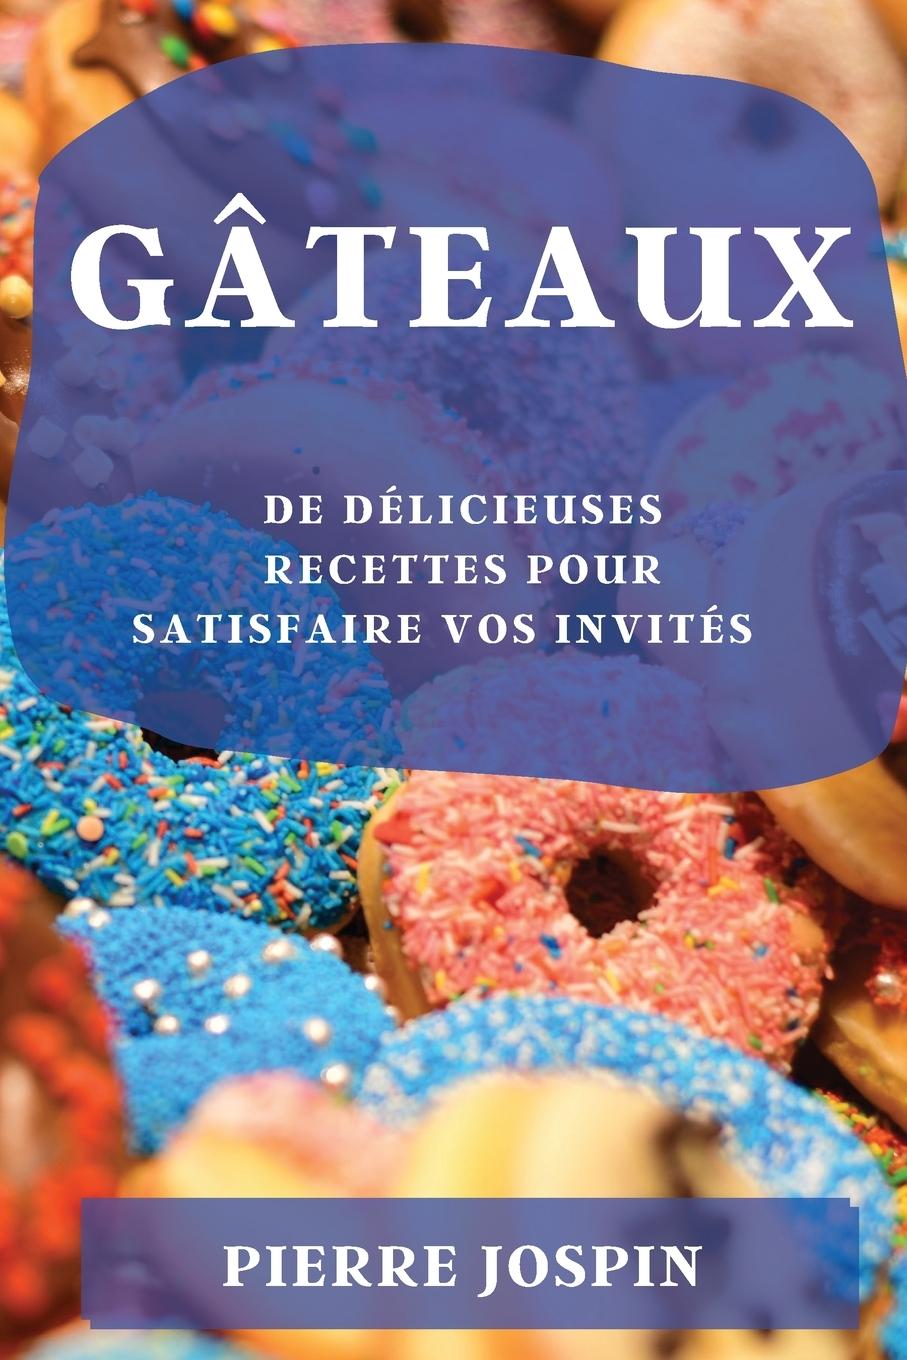 Книга Gateaux 